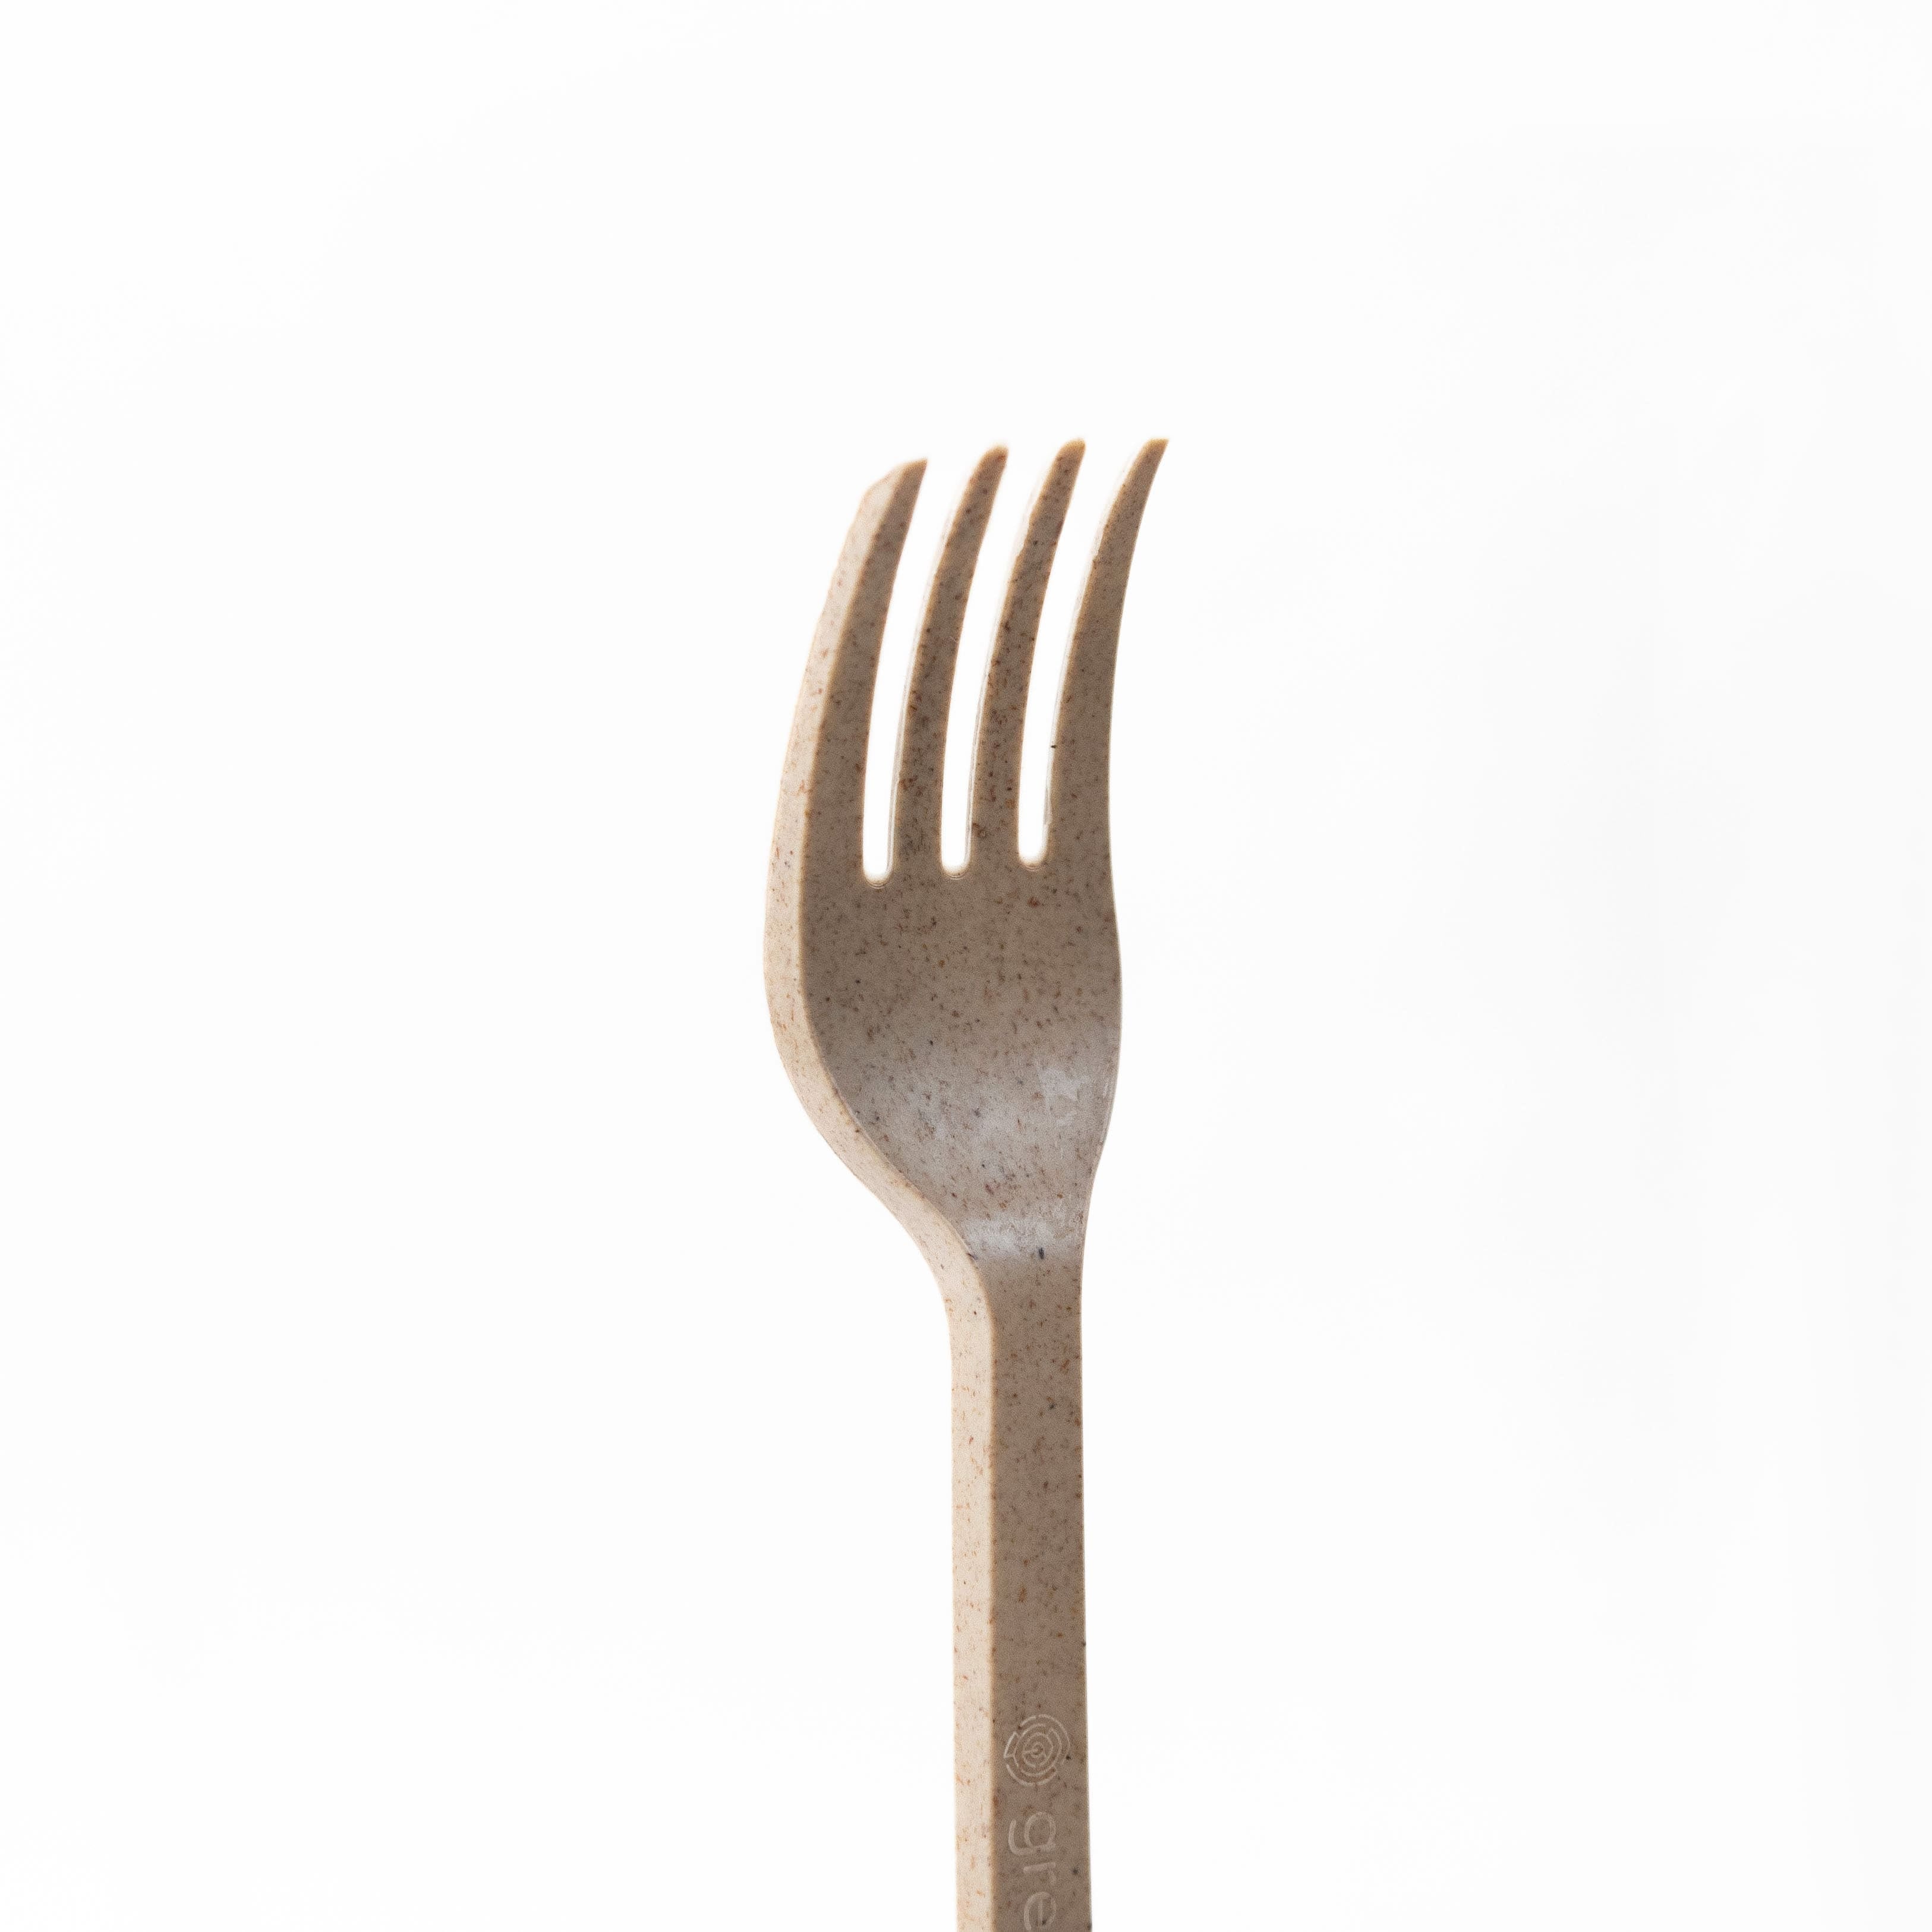 Agave based Forks - 1,000